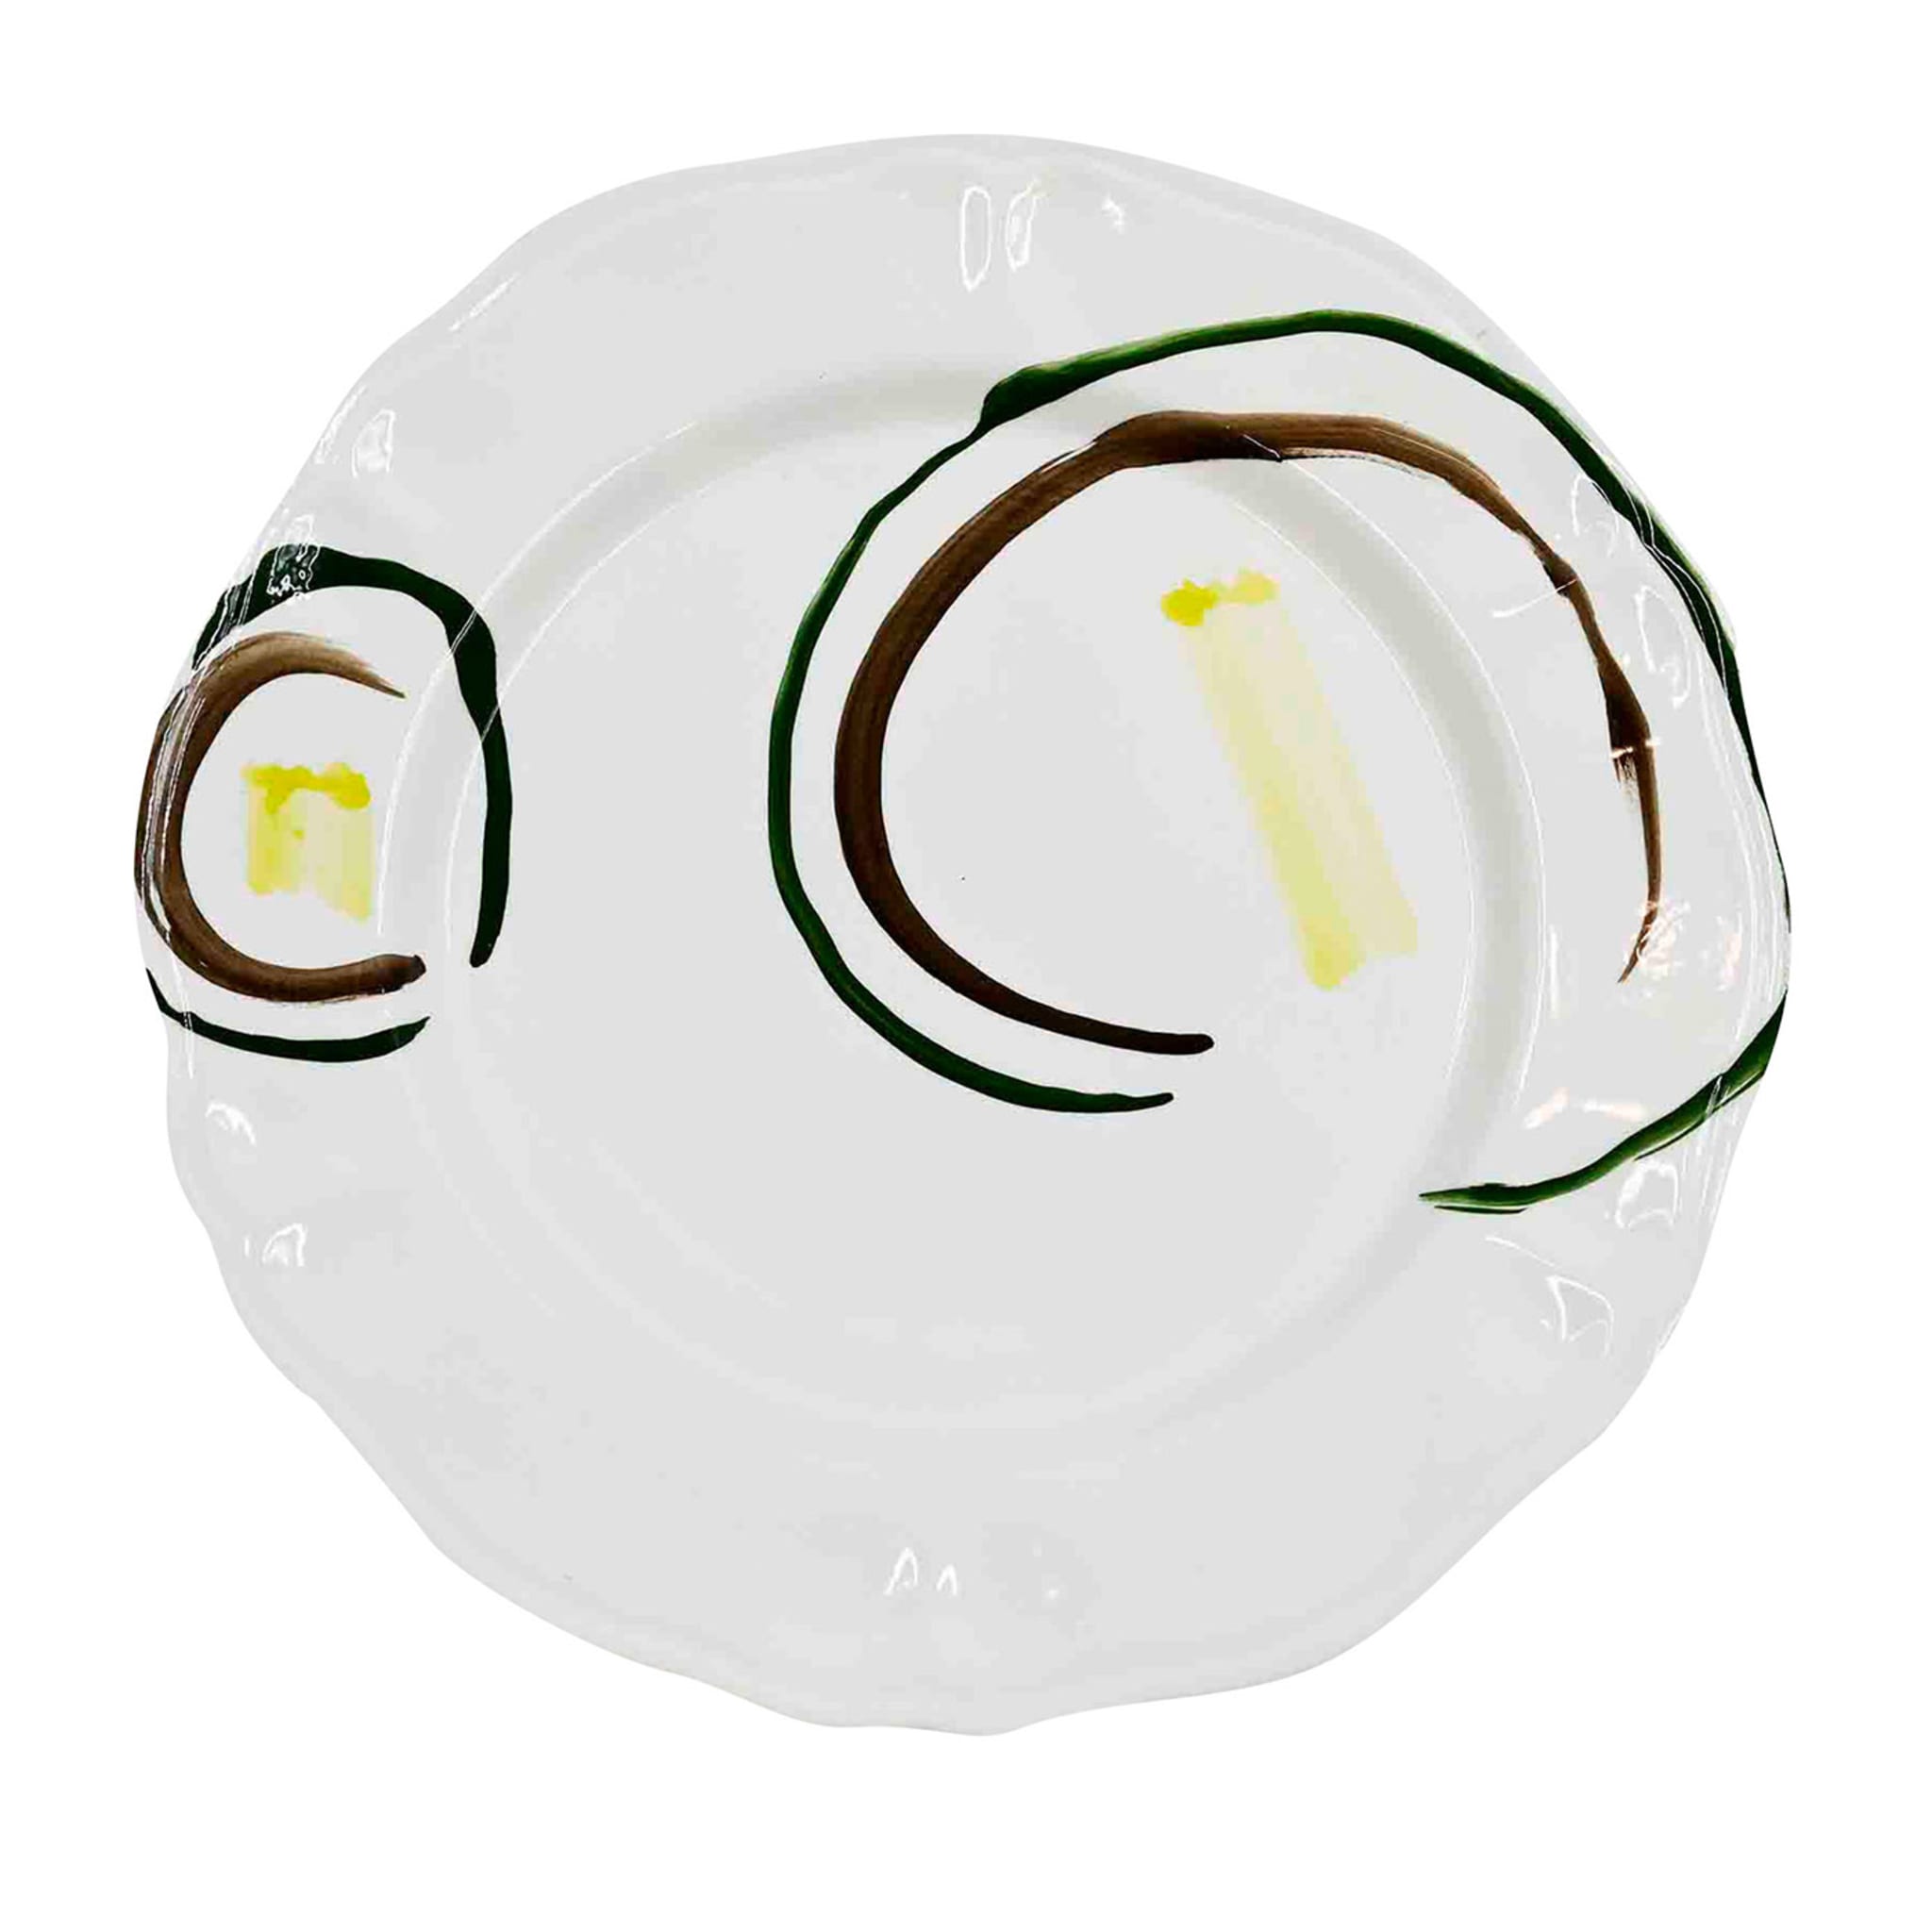 Premium Italian Handcrafted Ceramic Plate